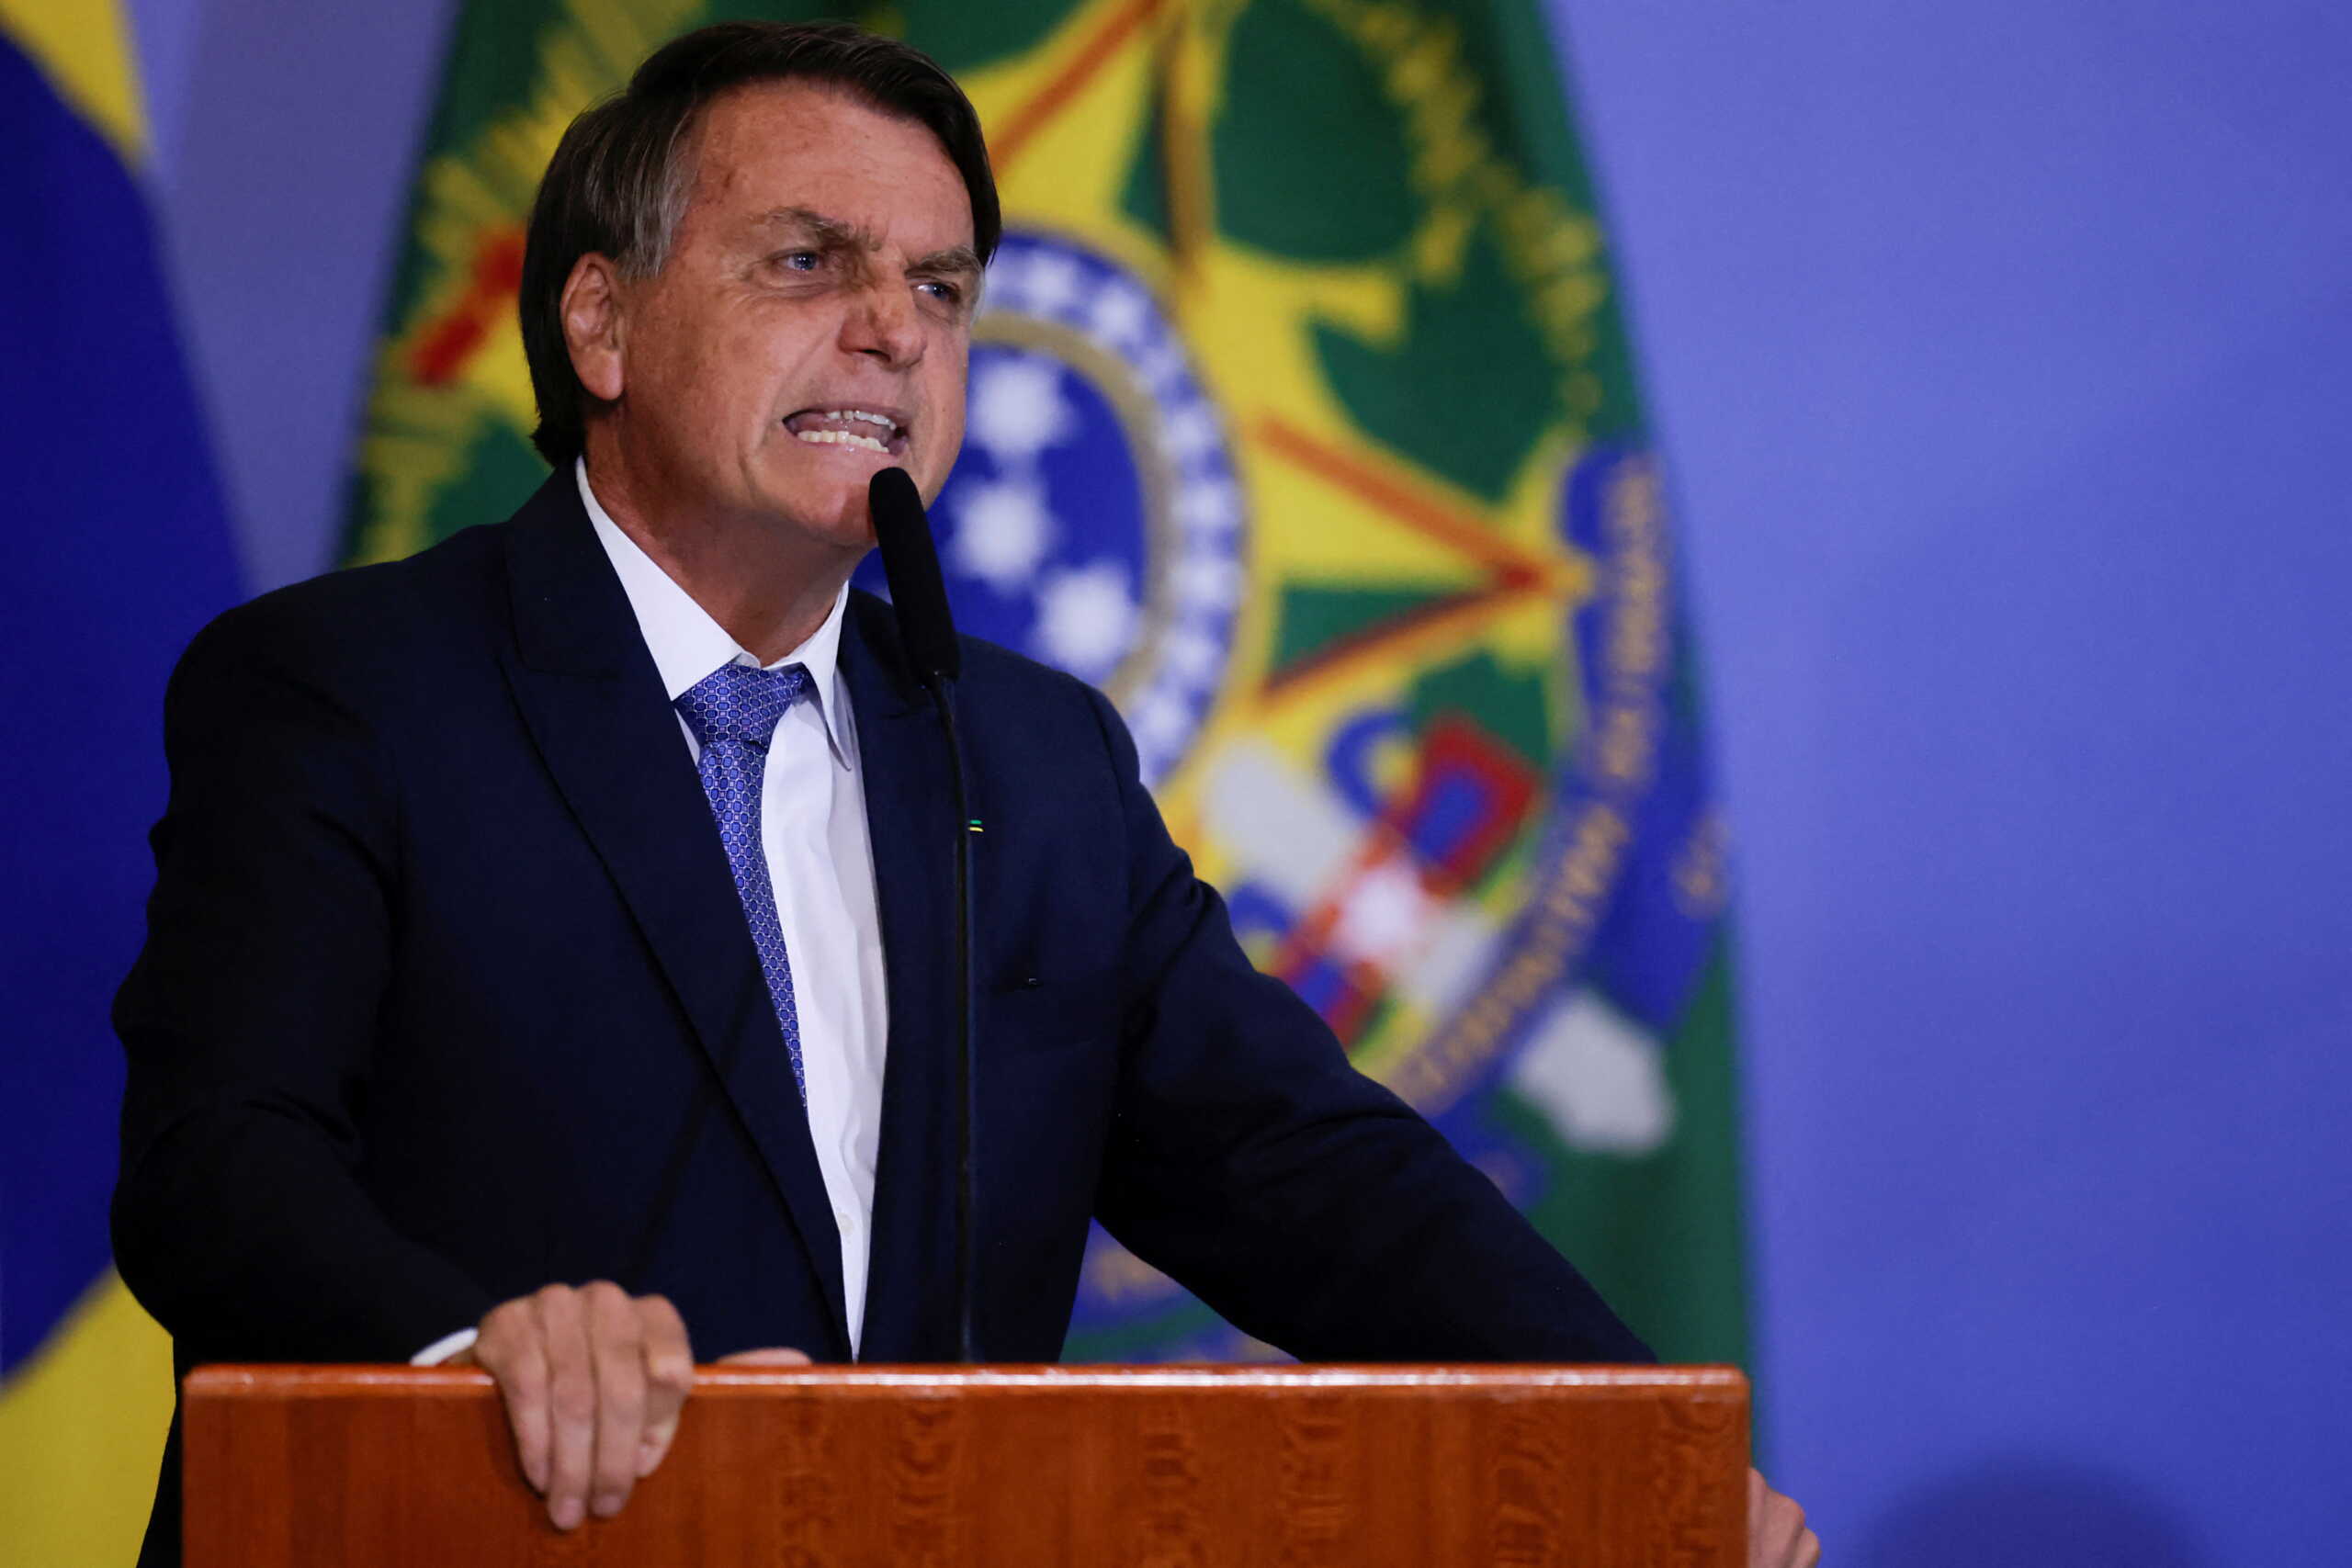 Δολοφονία Σίνζο Άμπε: «Εξοργισμένος» δηλώνει ο Μπολσονάρο – 3ημερο εθνικό πένθος στη Βραζιλία